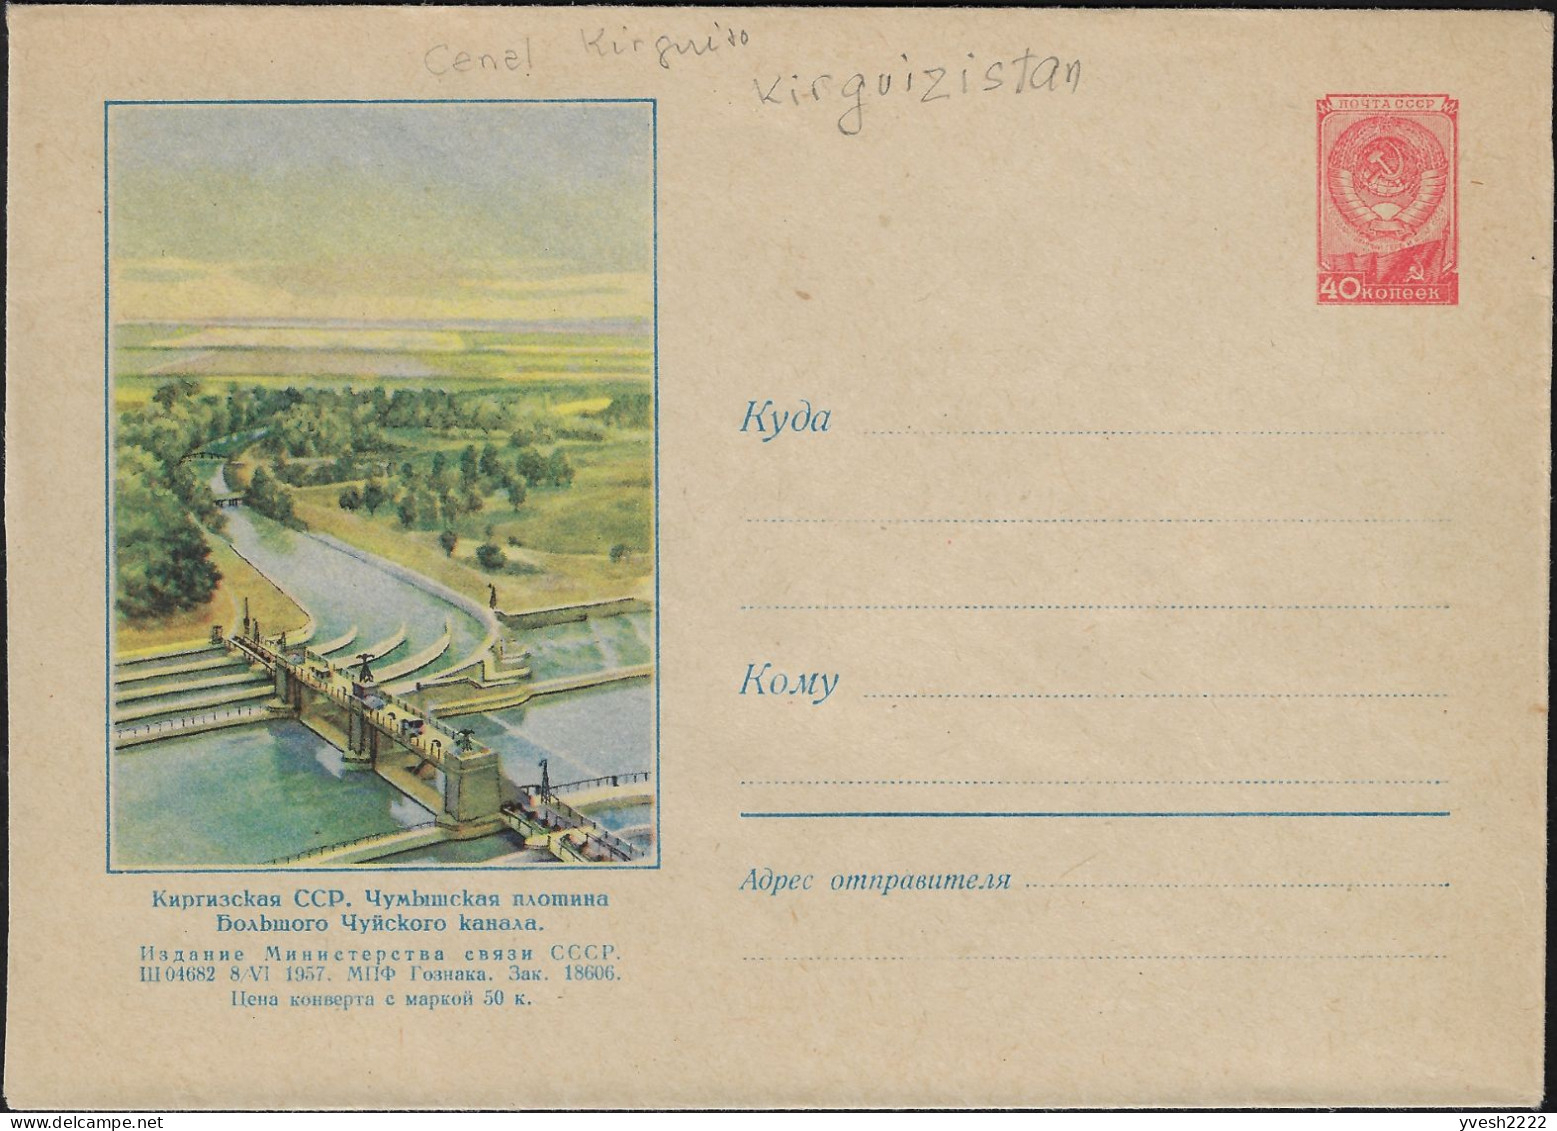 Kirghizstan, Occupation Soviétique. Entier Postal Illustré, Grand Canal De Chüy Et Son Barrage Chumysh - Eau